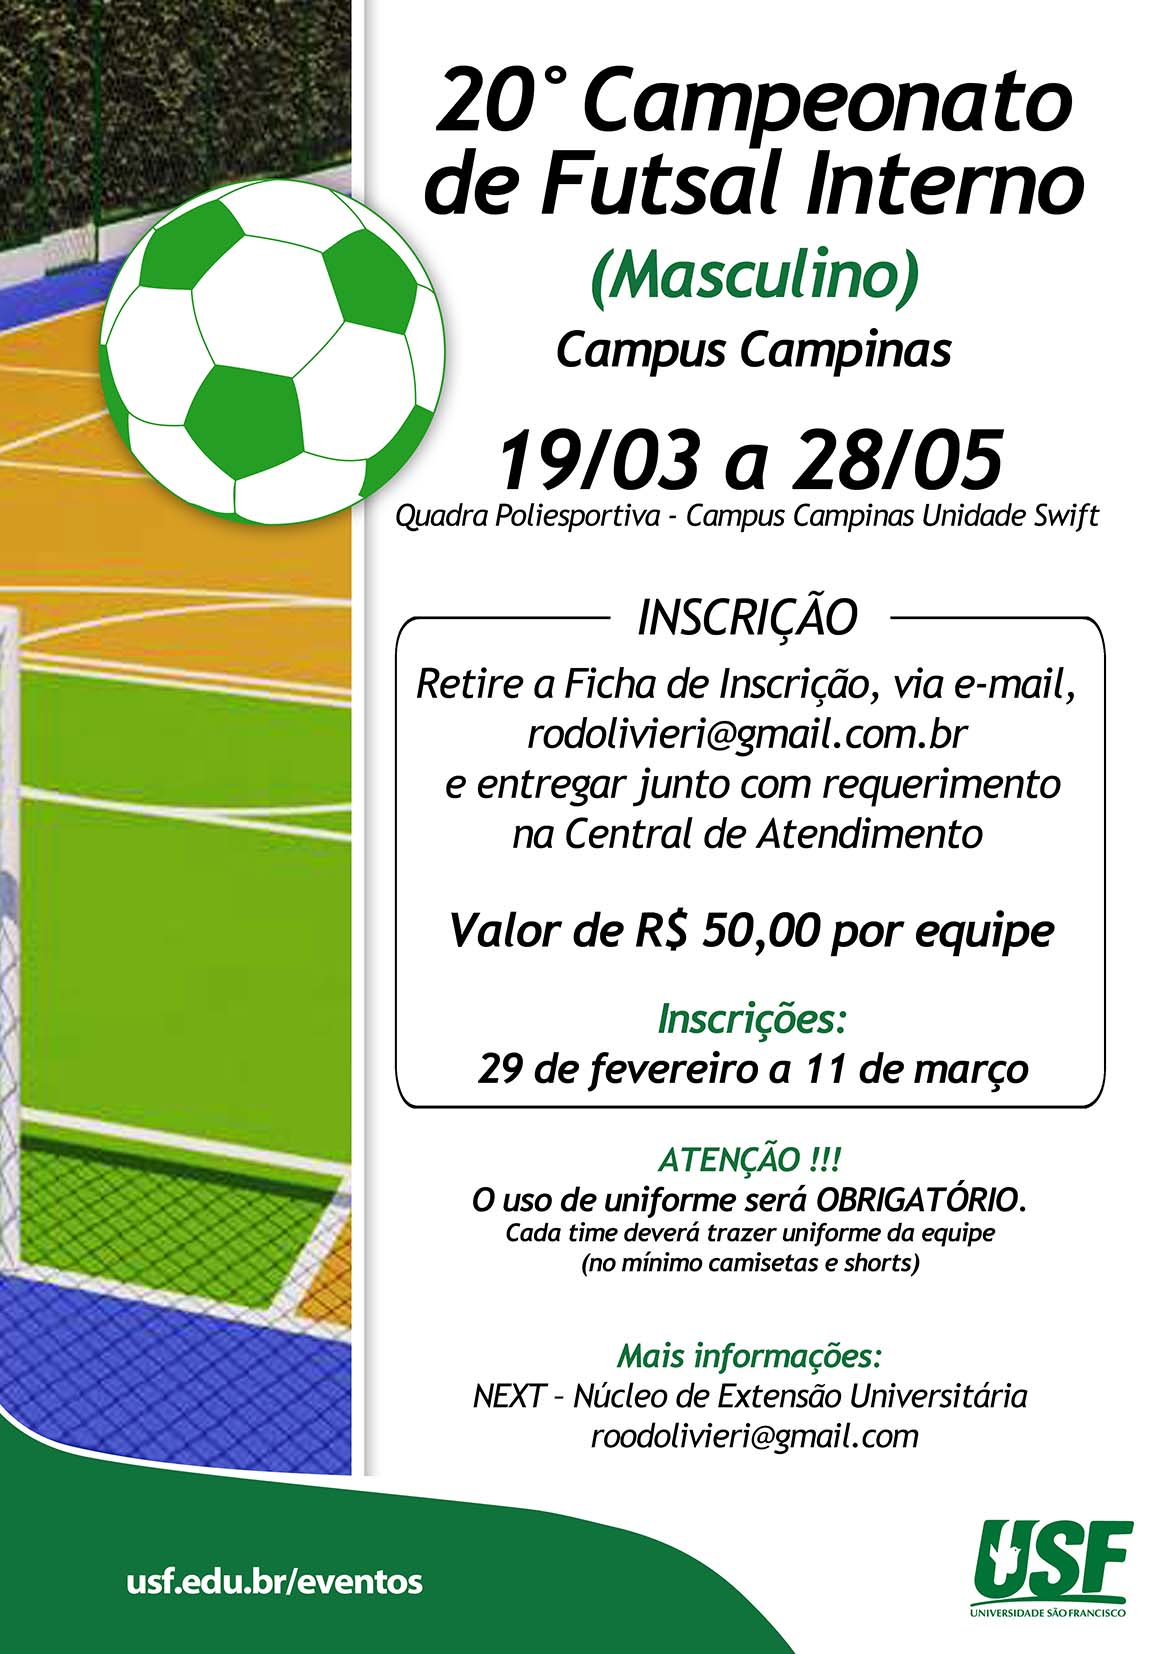 20° Campeonato de Futsal Interno - Campus Campinas